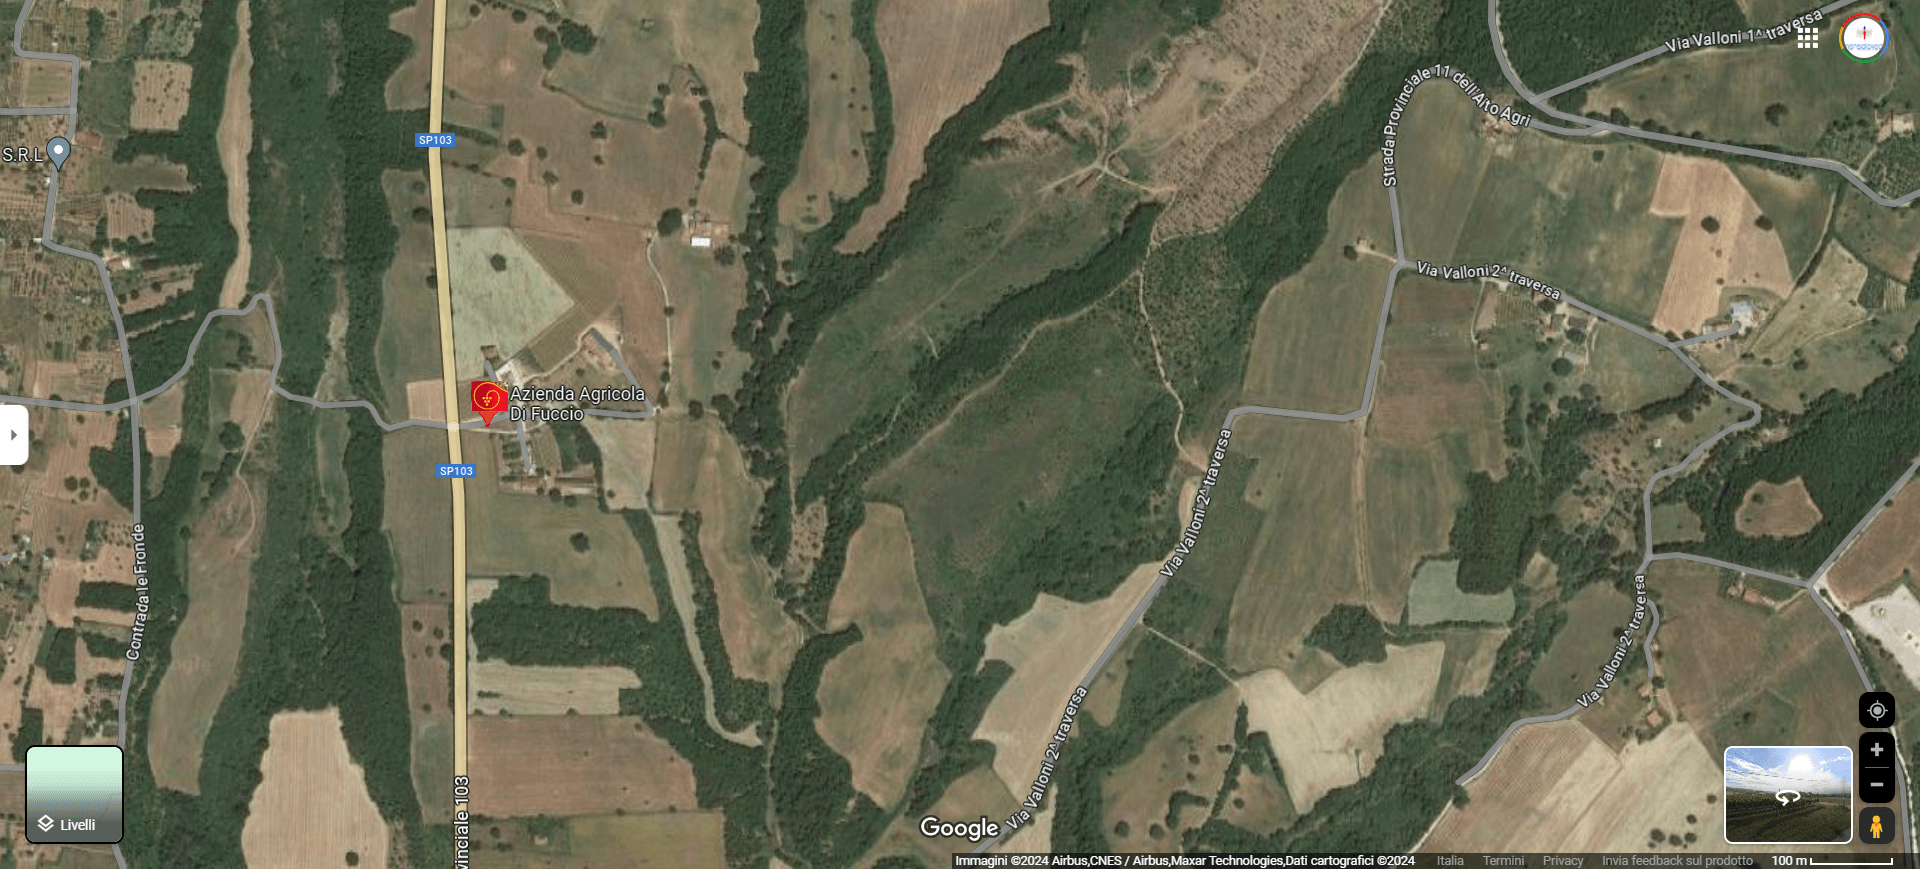 Azienda Agricola Di Fuccio Google Maps 2024 1